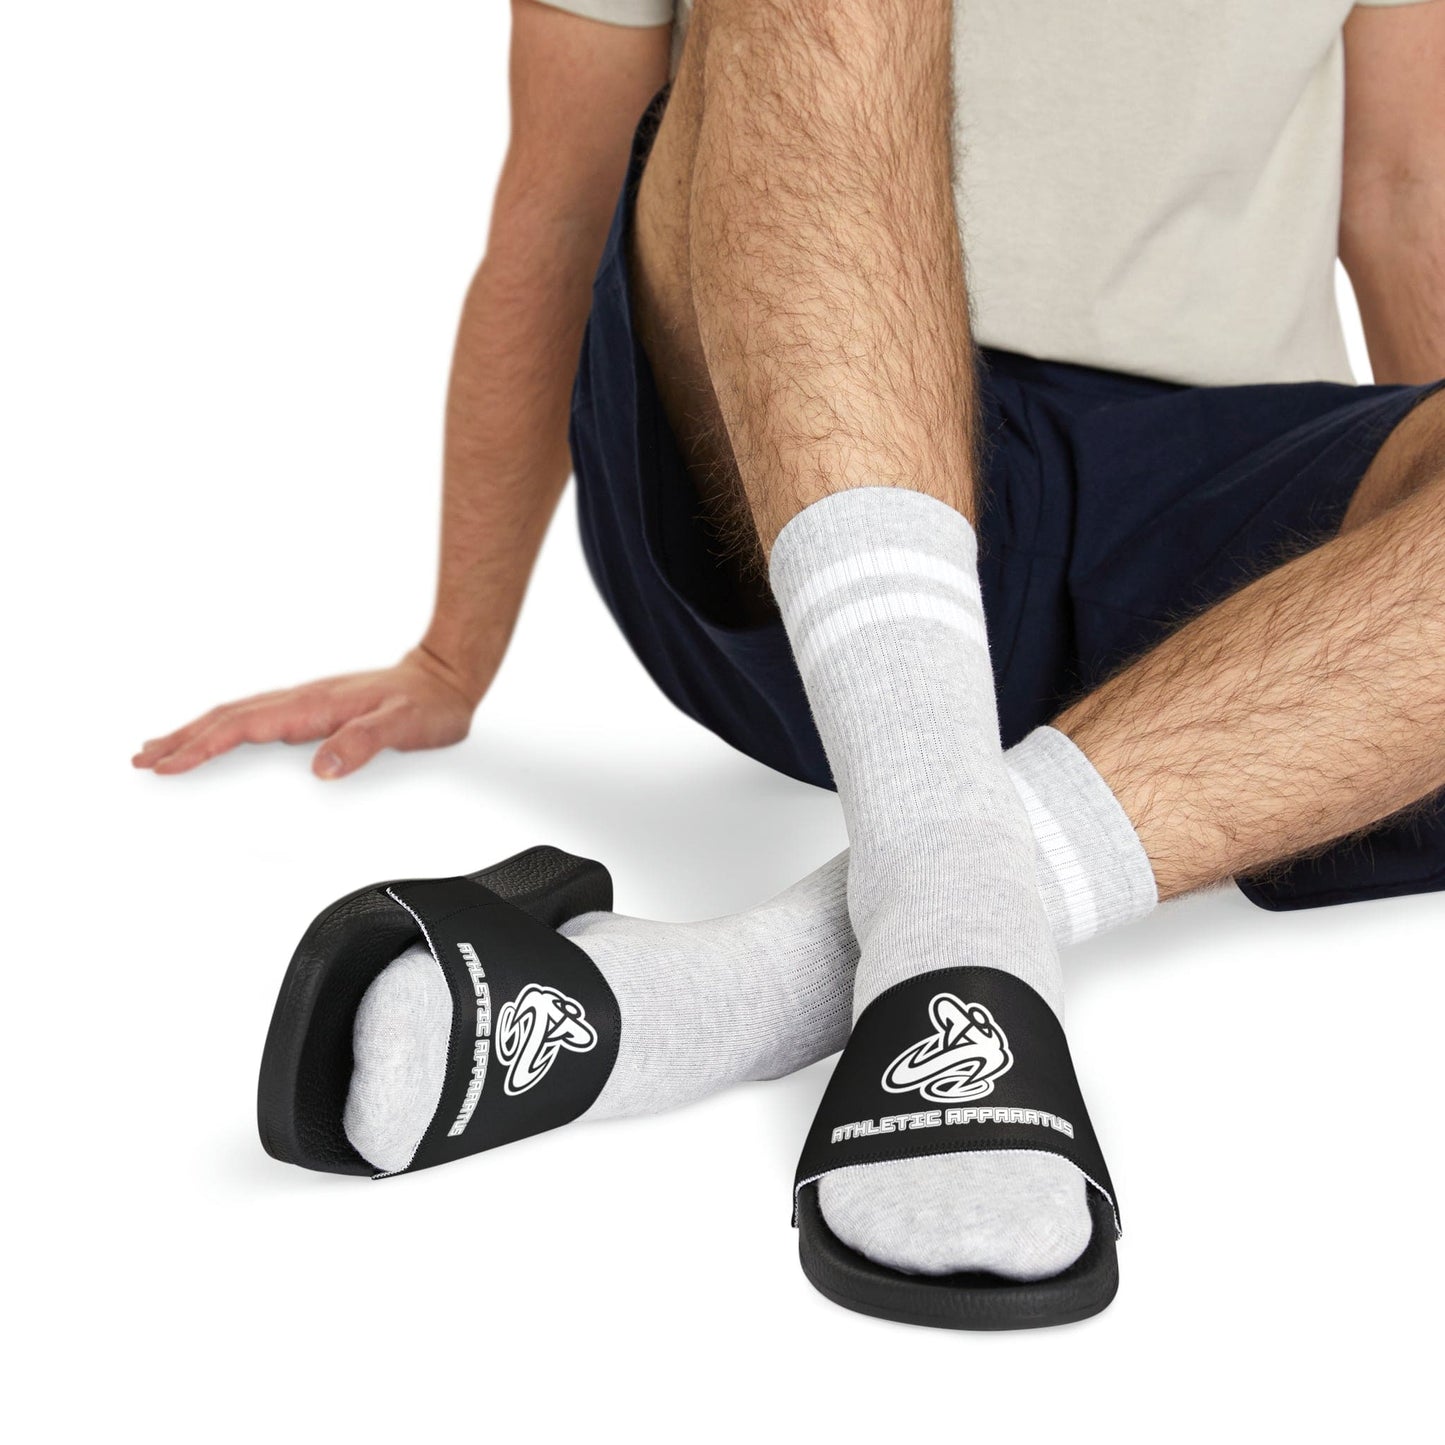 
                  
                    Athletic Apparatus Black Men's PU Slide Sandals
                  
                